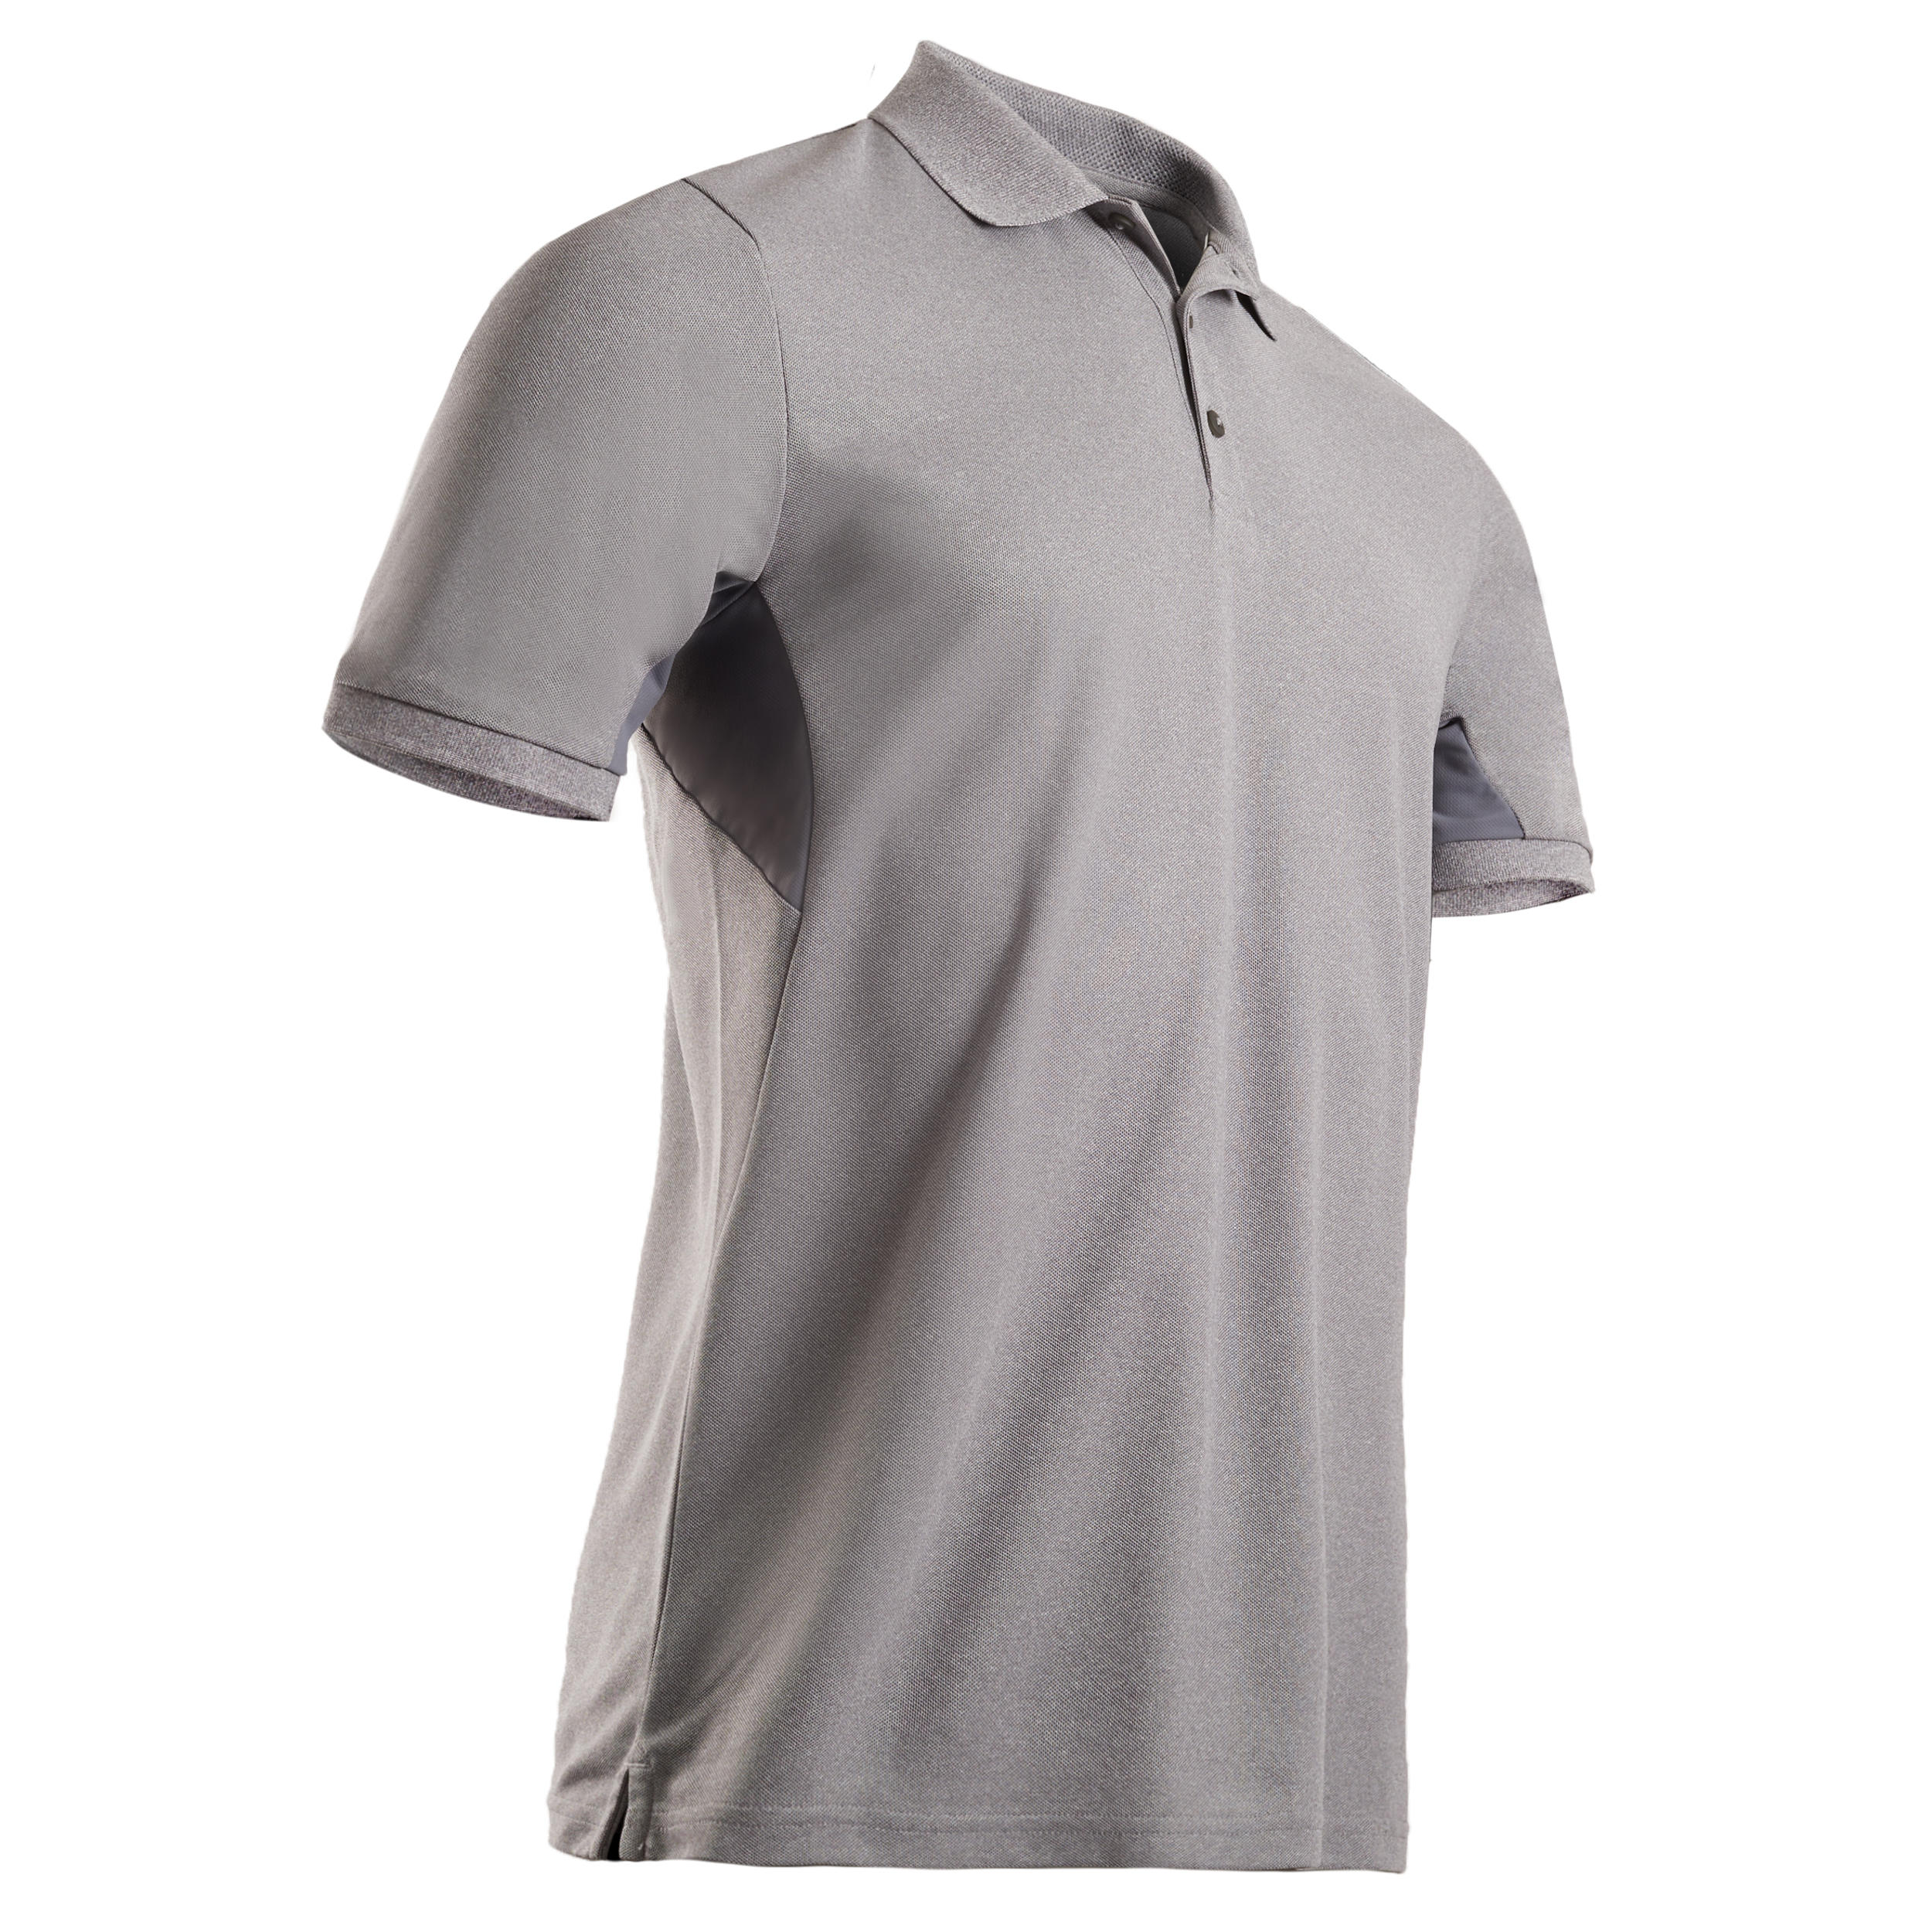 Men's Golf Polo Shirt - Light Blue 